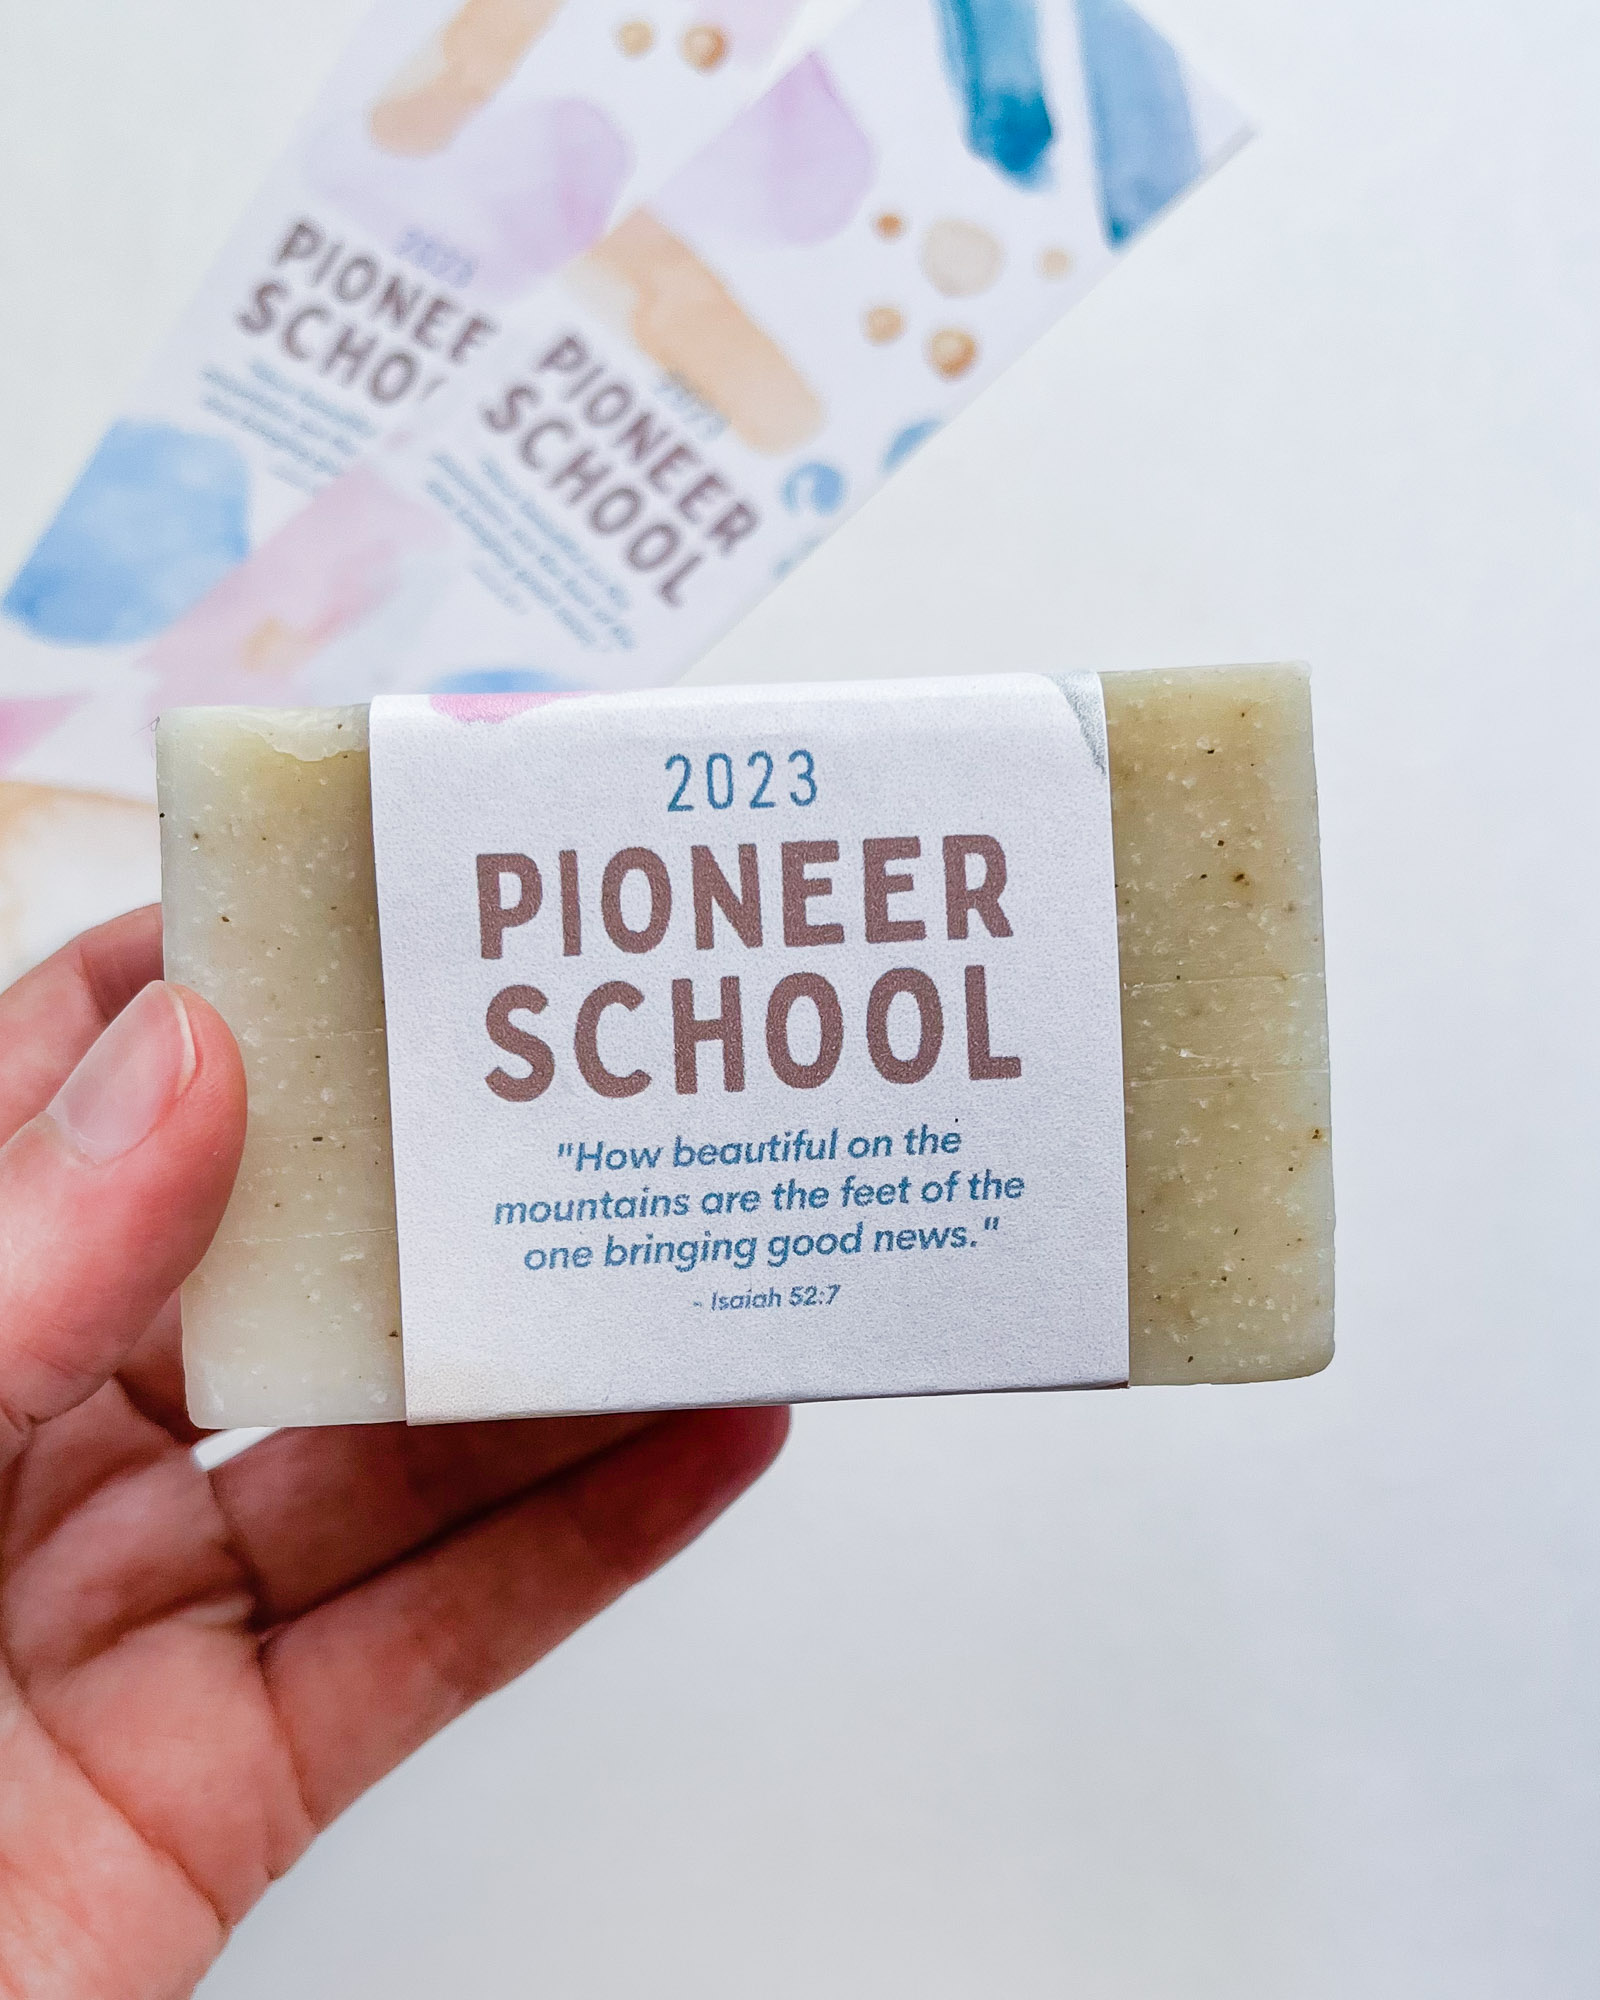 jw pioneer school 2023 printable soap labels